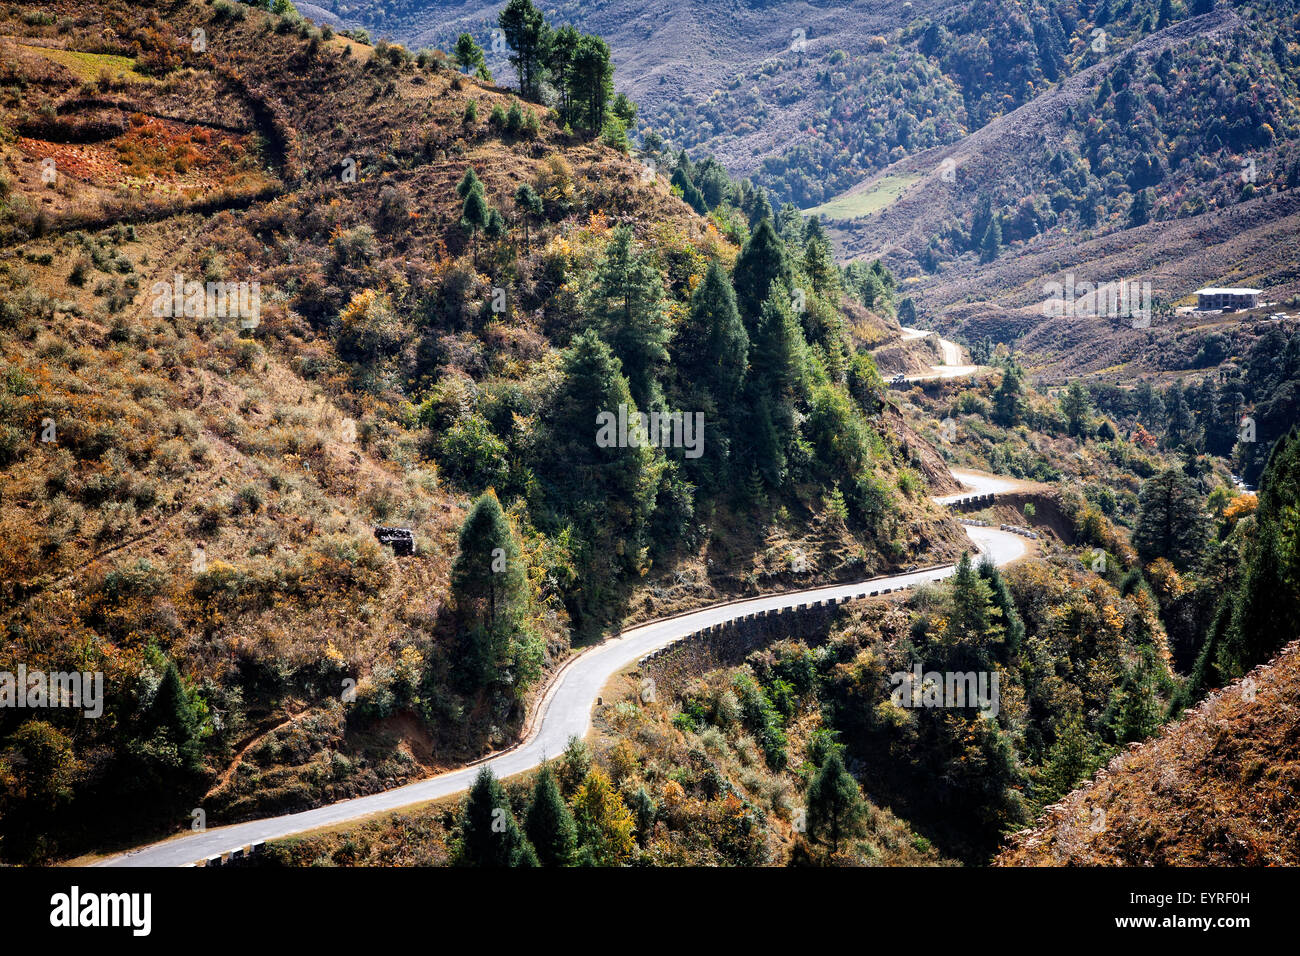 Die Wicklung Bhumthang-Ura-Highway in den Ausläufern des Himalaya auf dem Weg nach Trongsa, Bhutan. Stockfoto